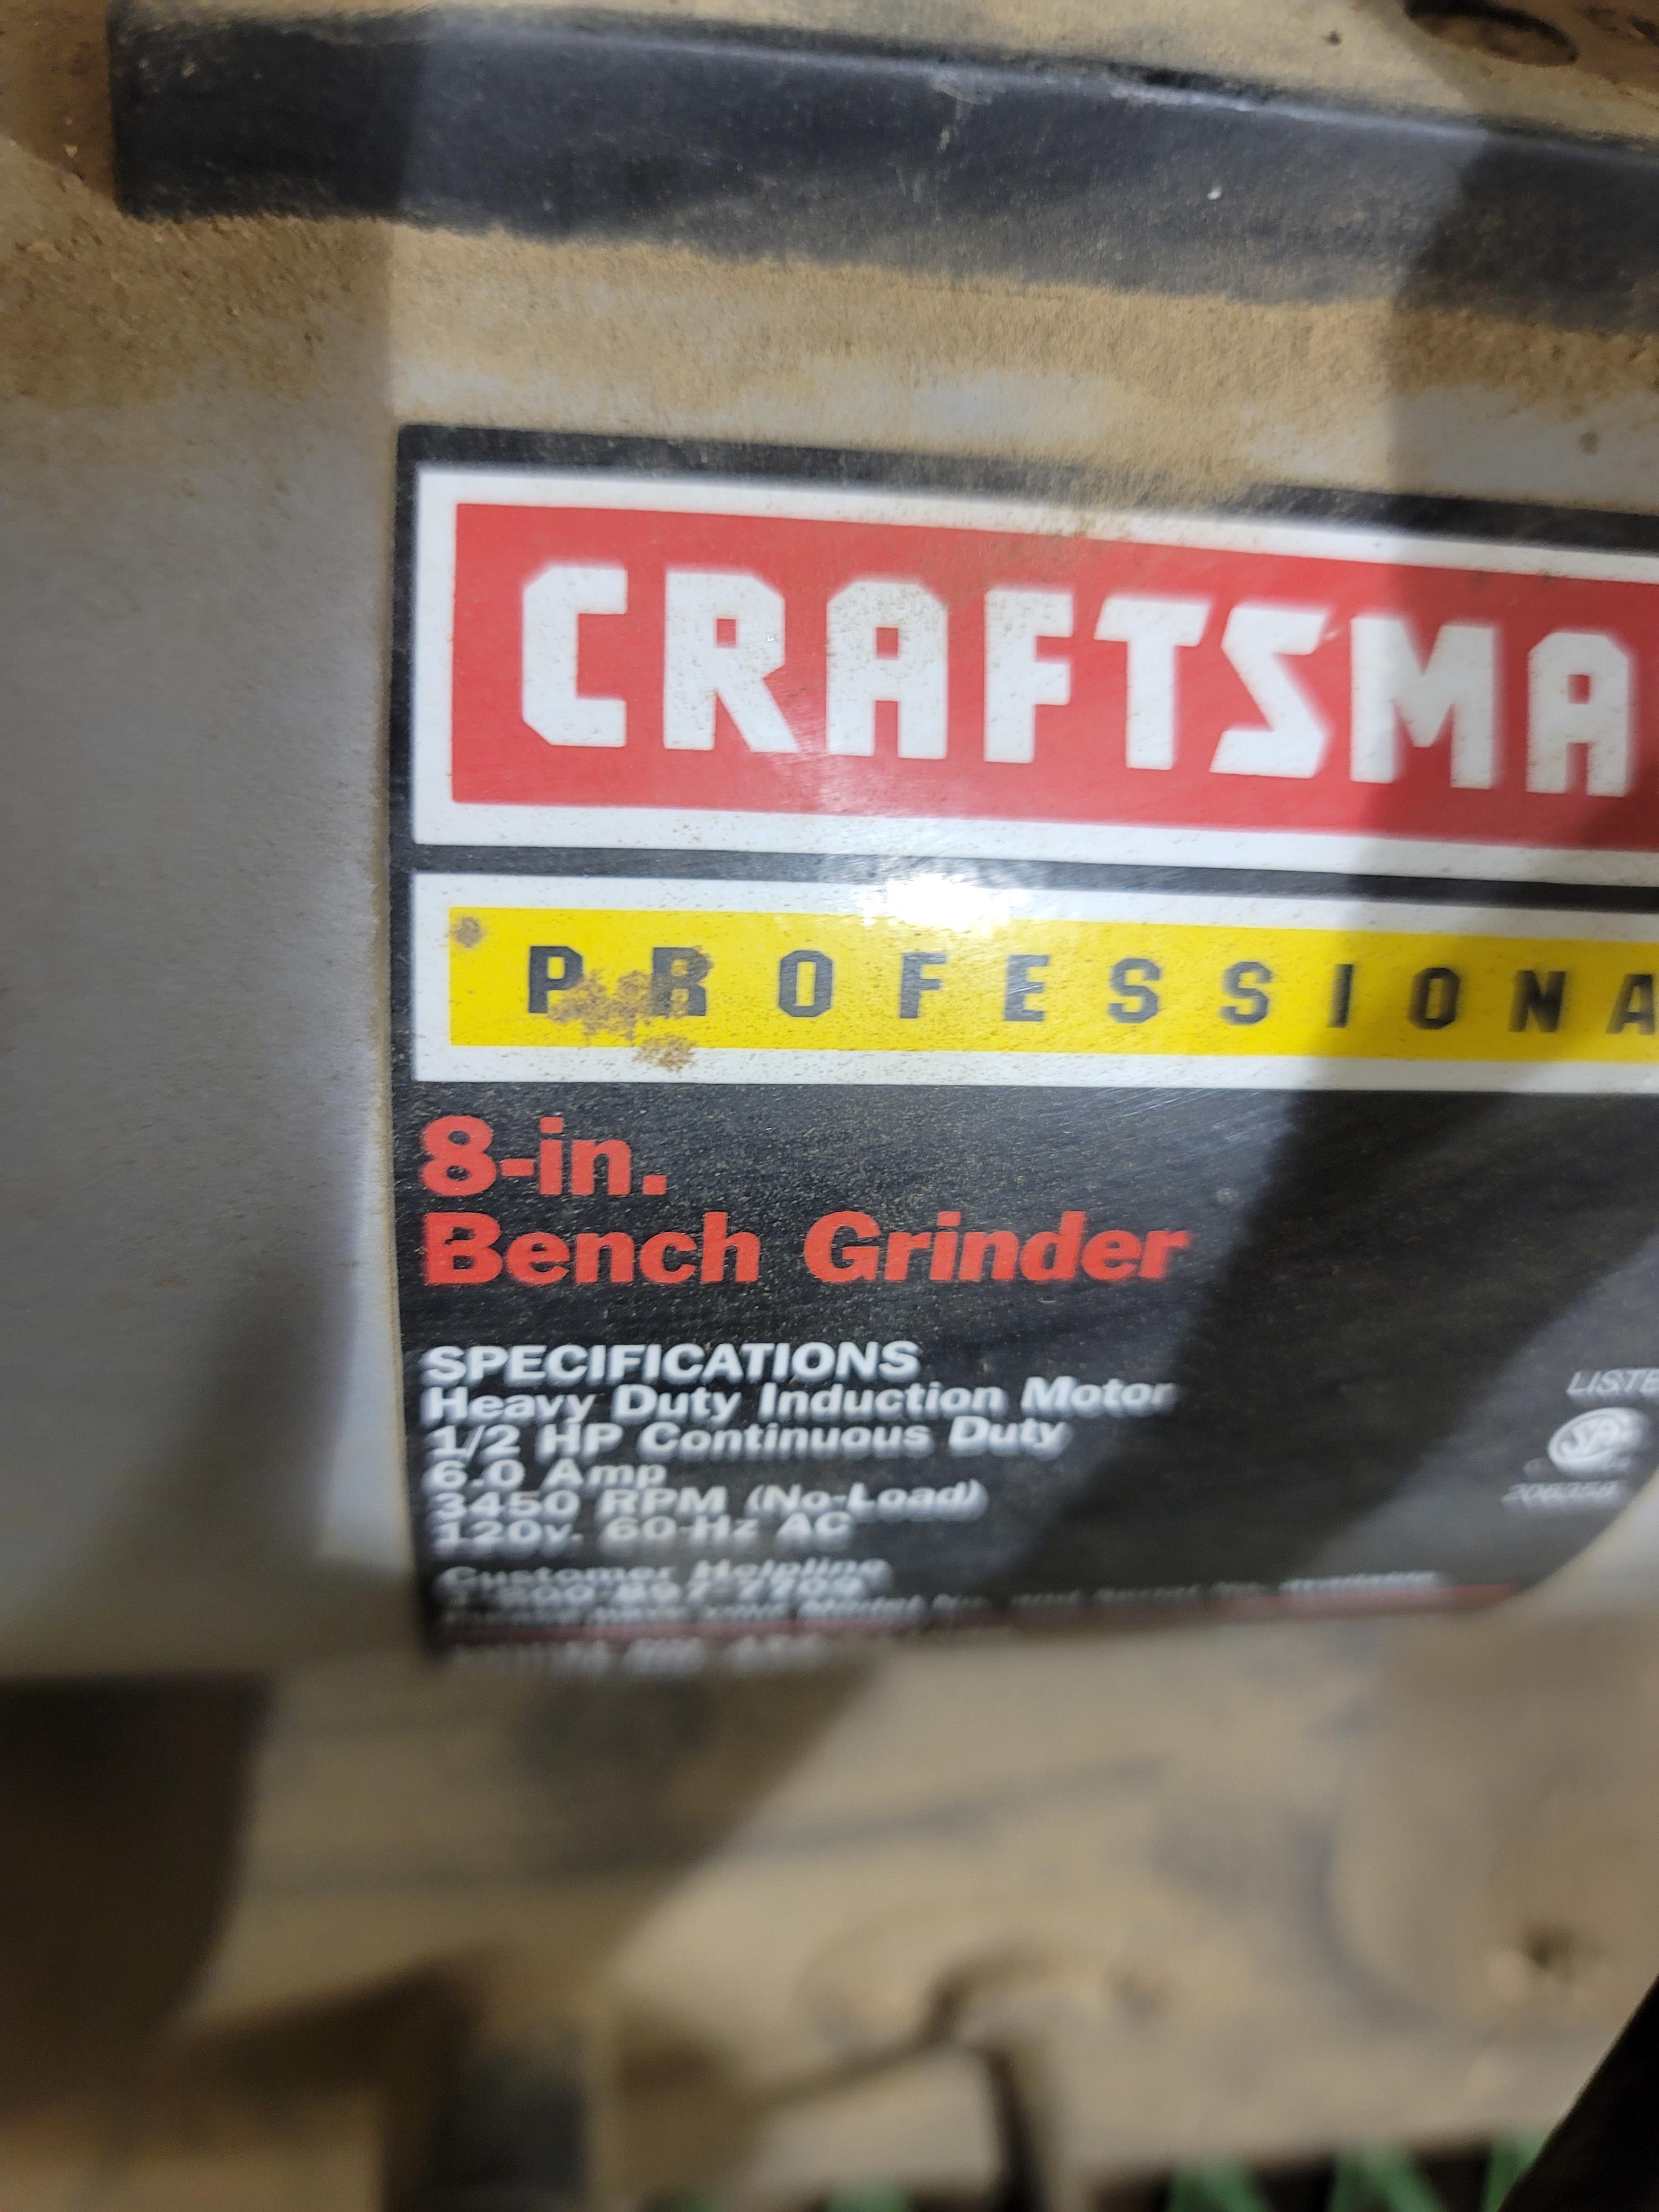 Craftsman 8" Bench Grinder. Works